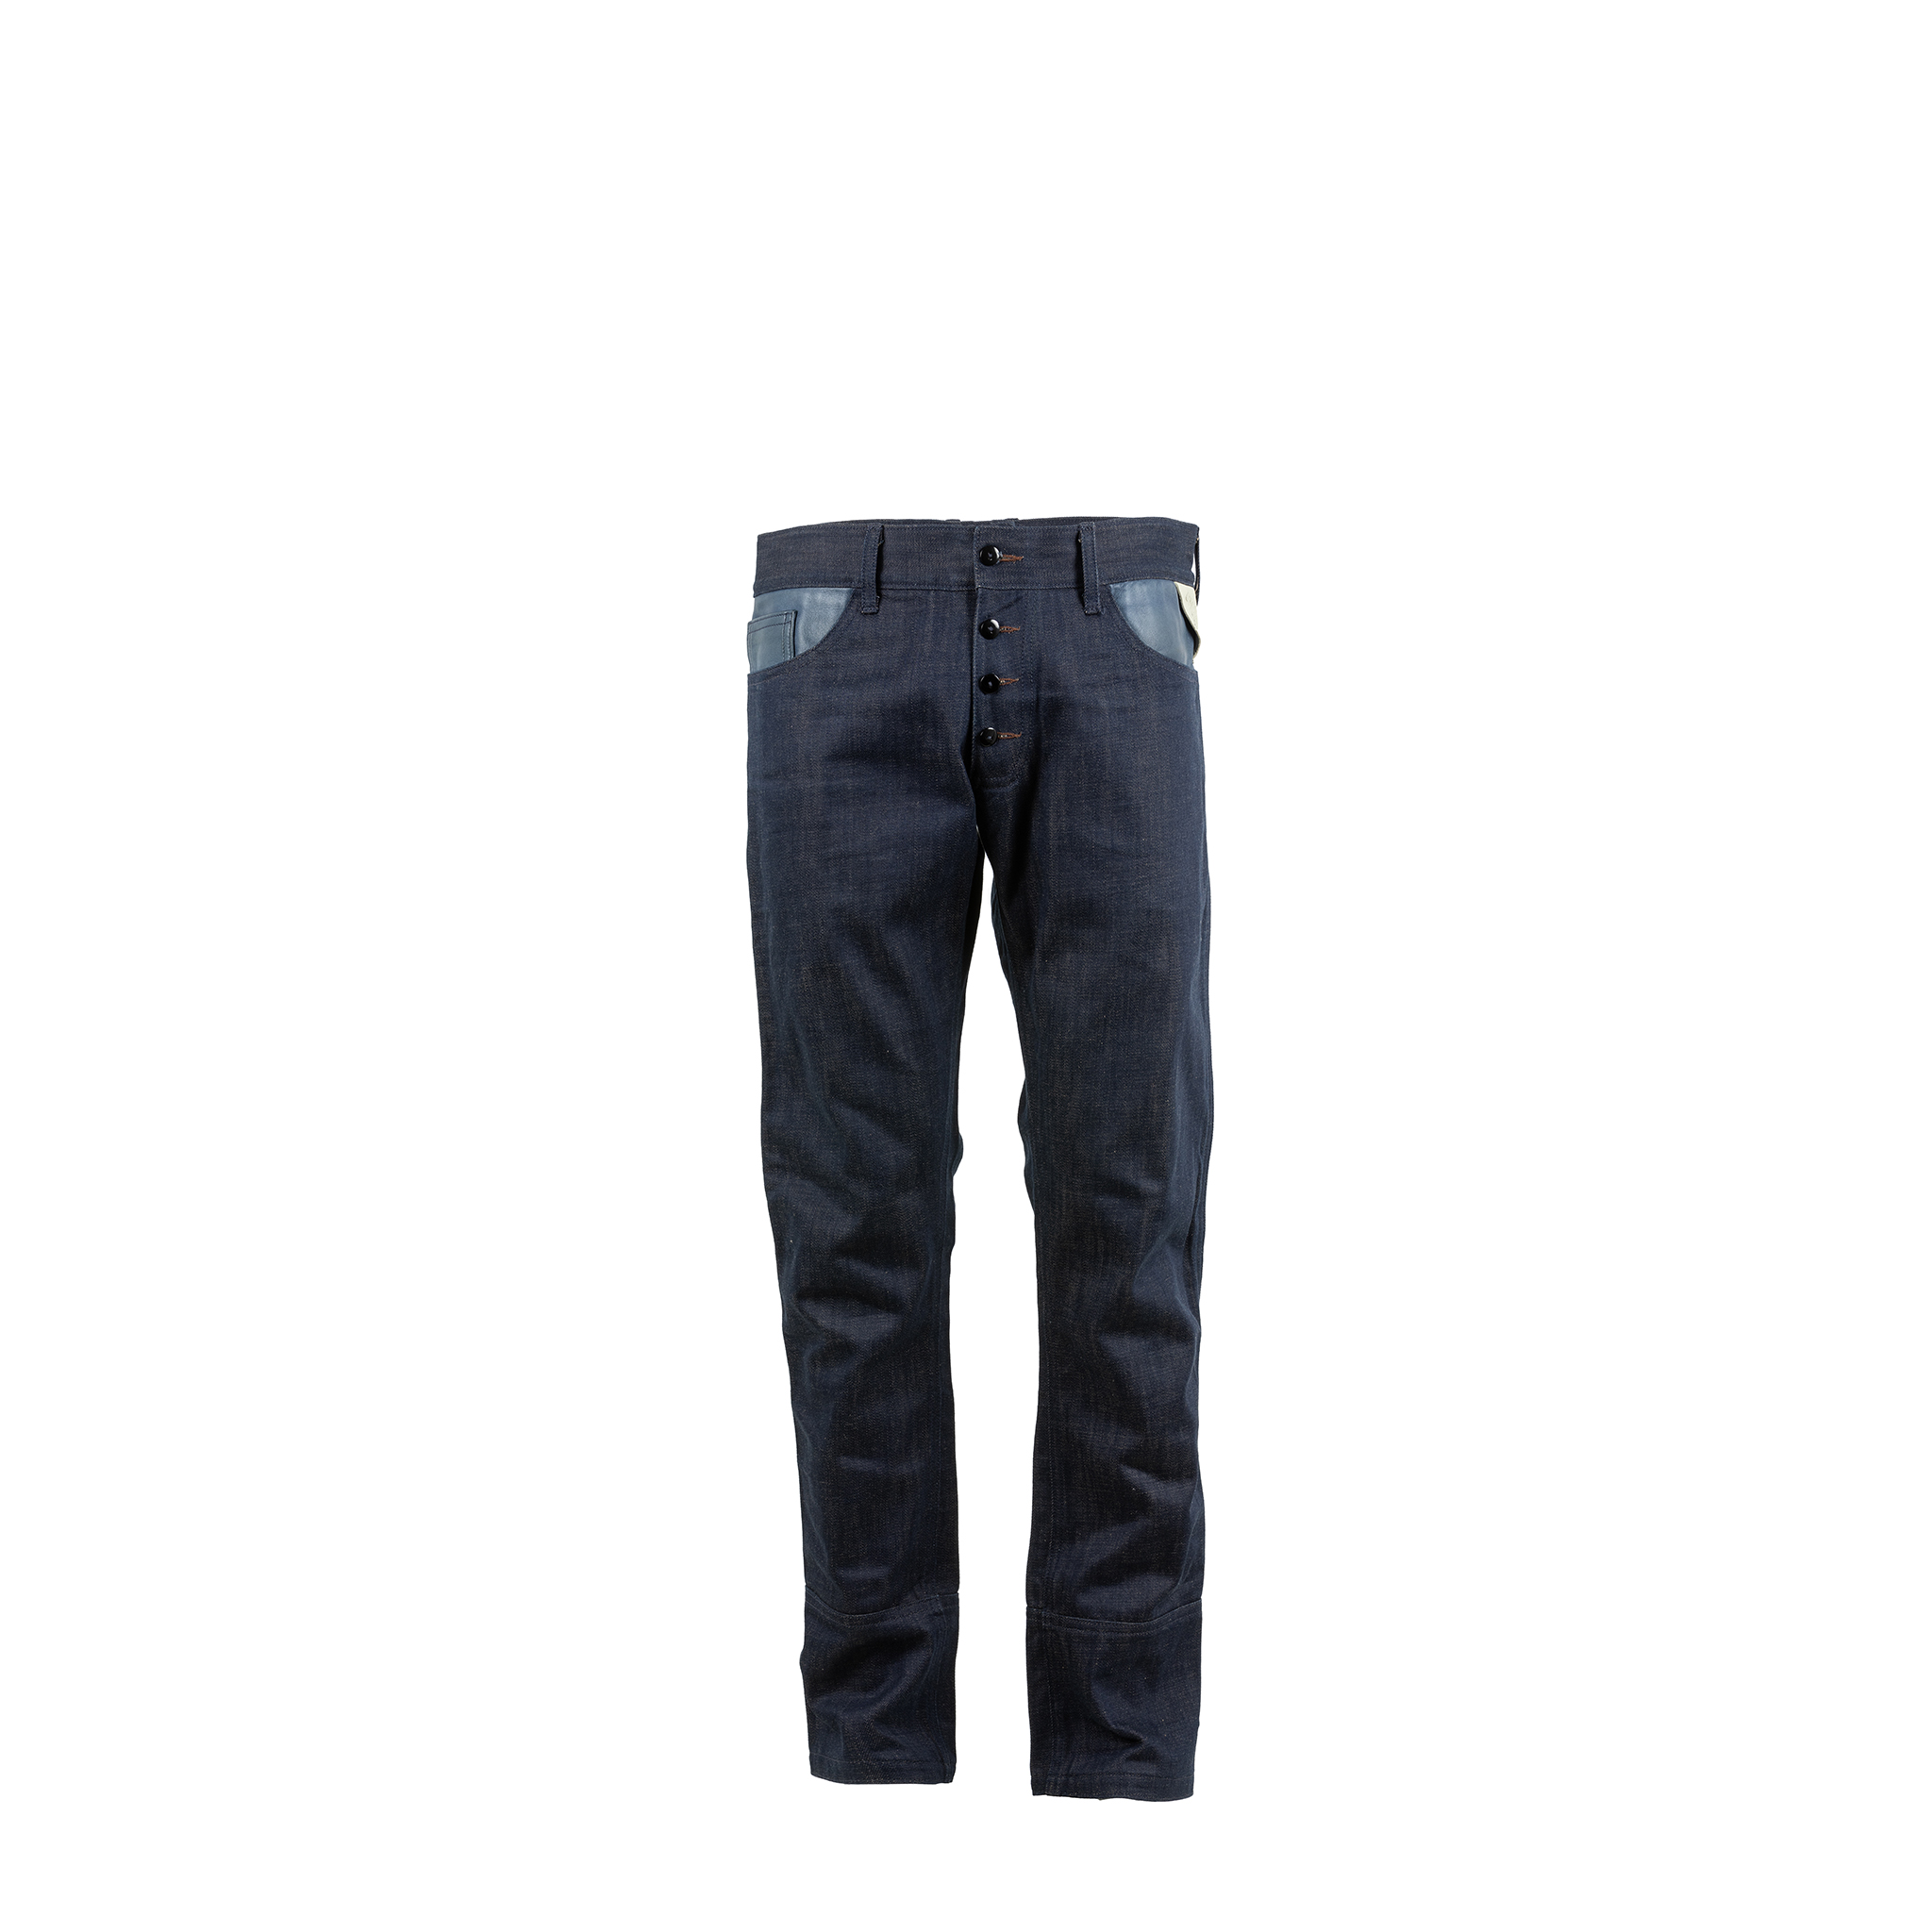 Jeans 2008 AC - Toile denim et cuir glacé - Couleur bleu